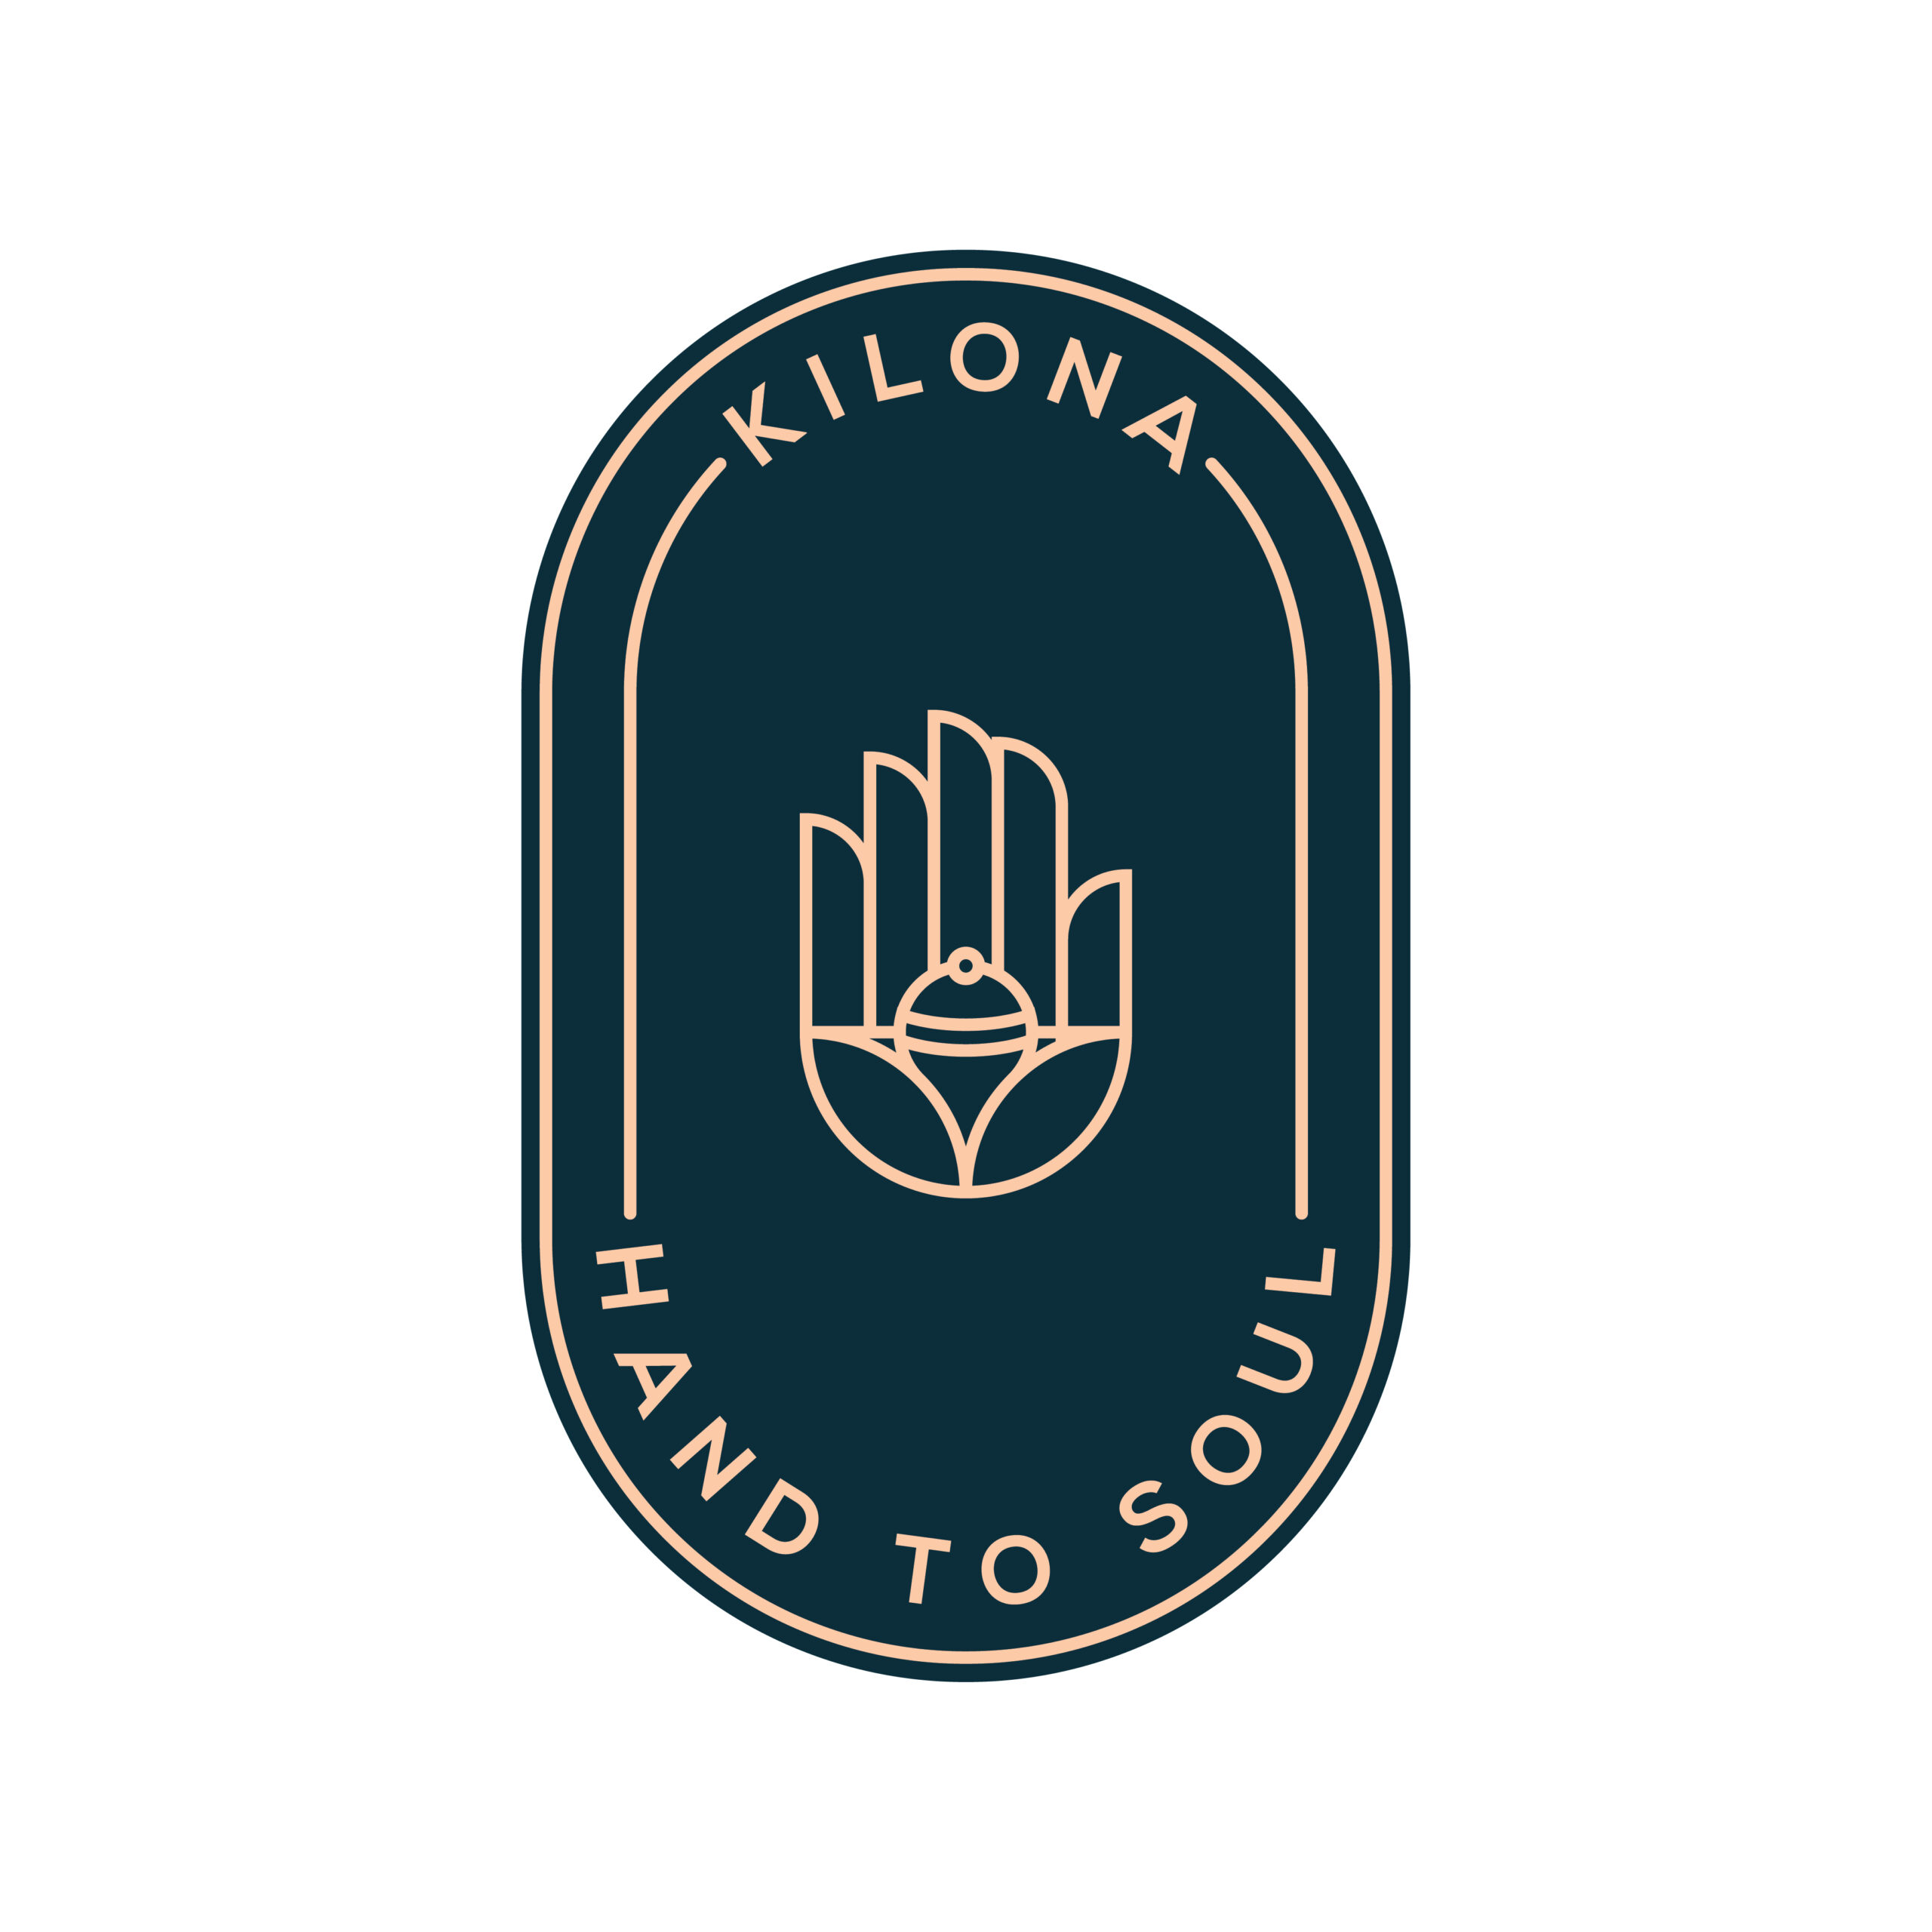 Kilona_Logo-03